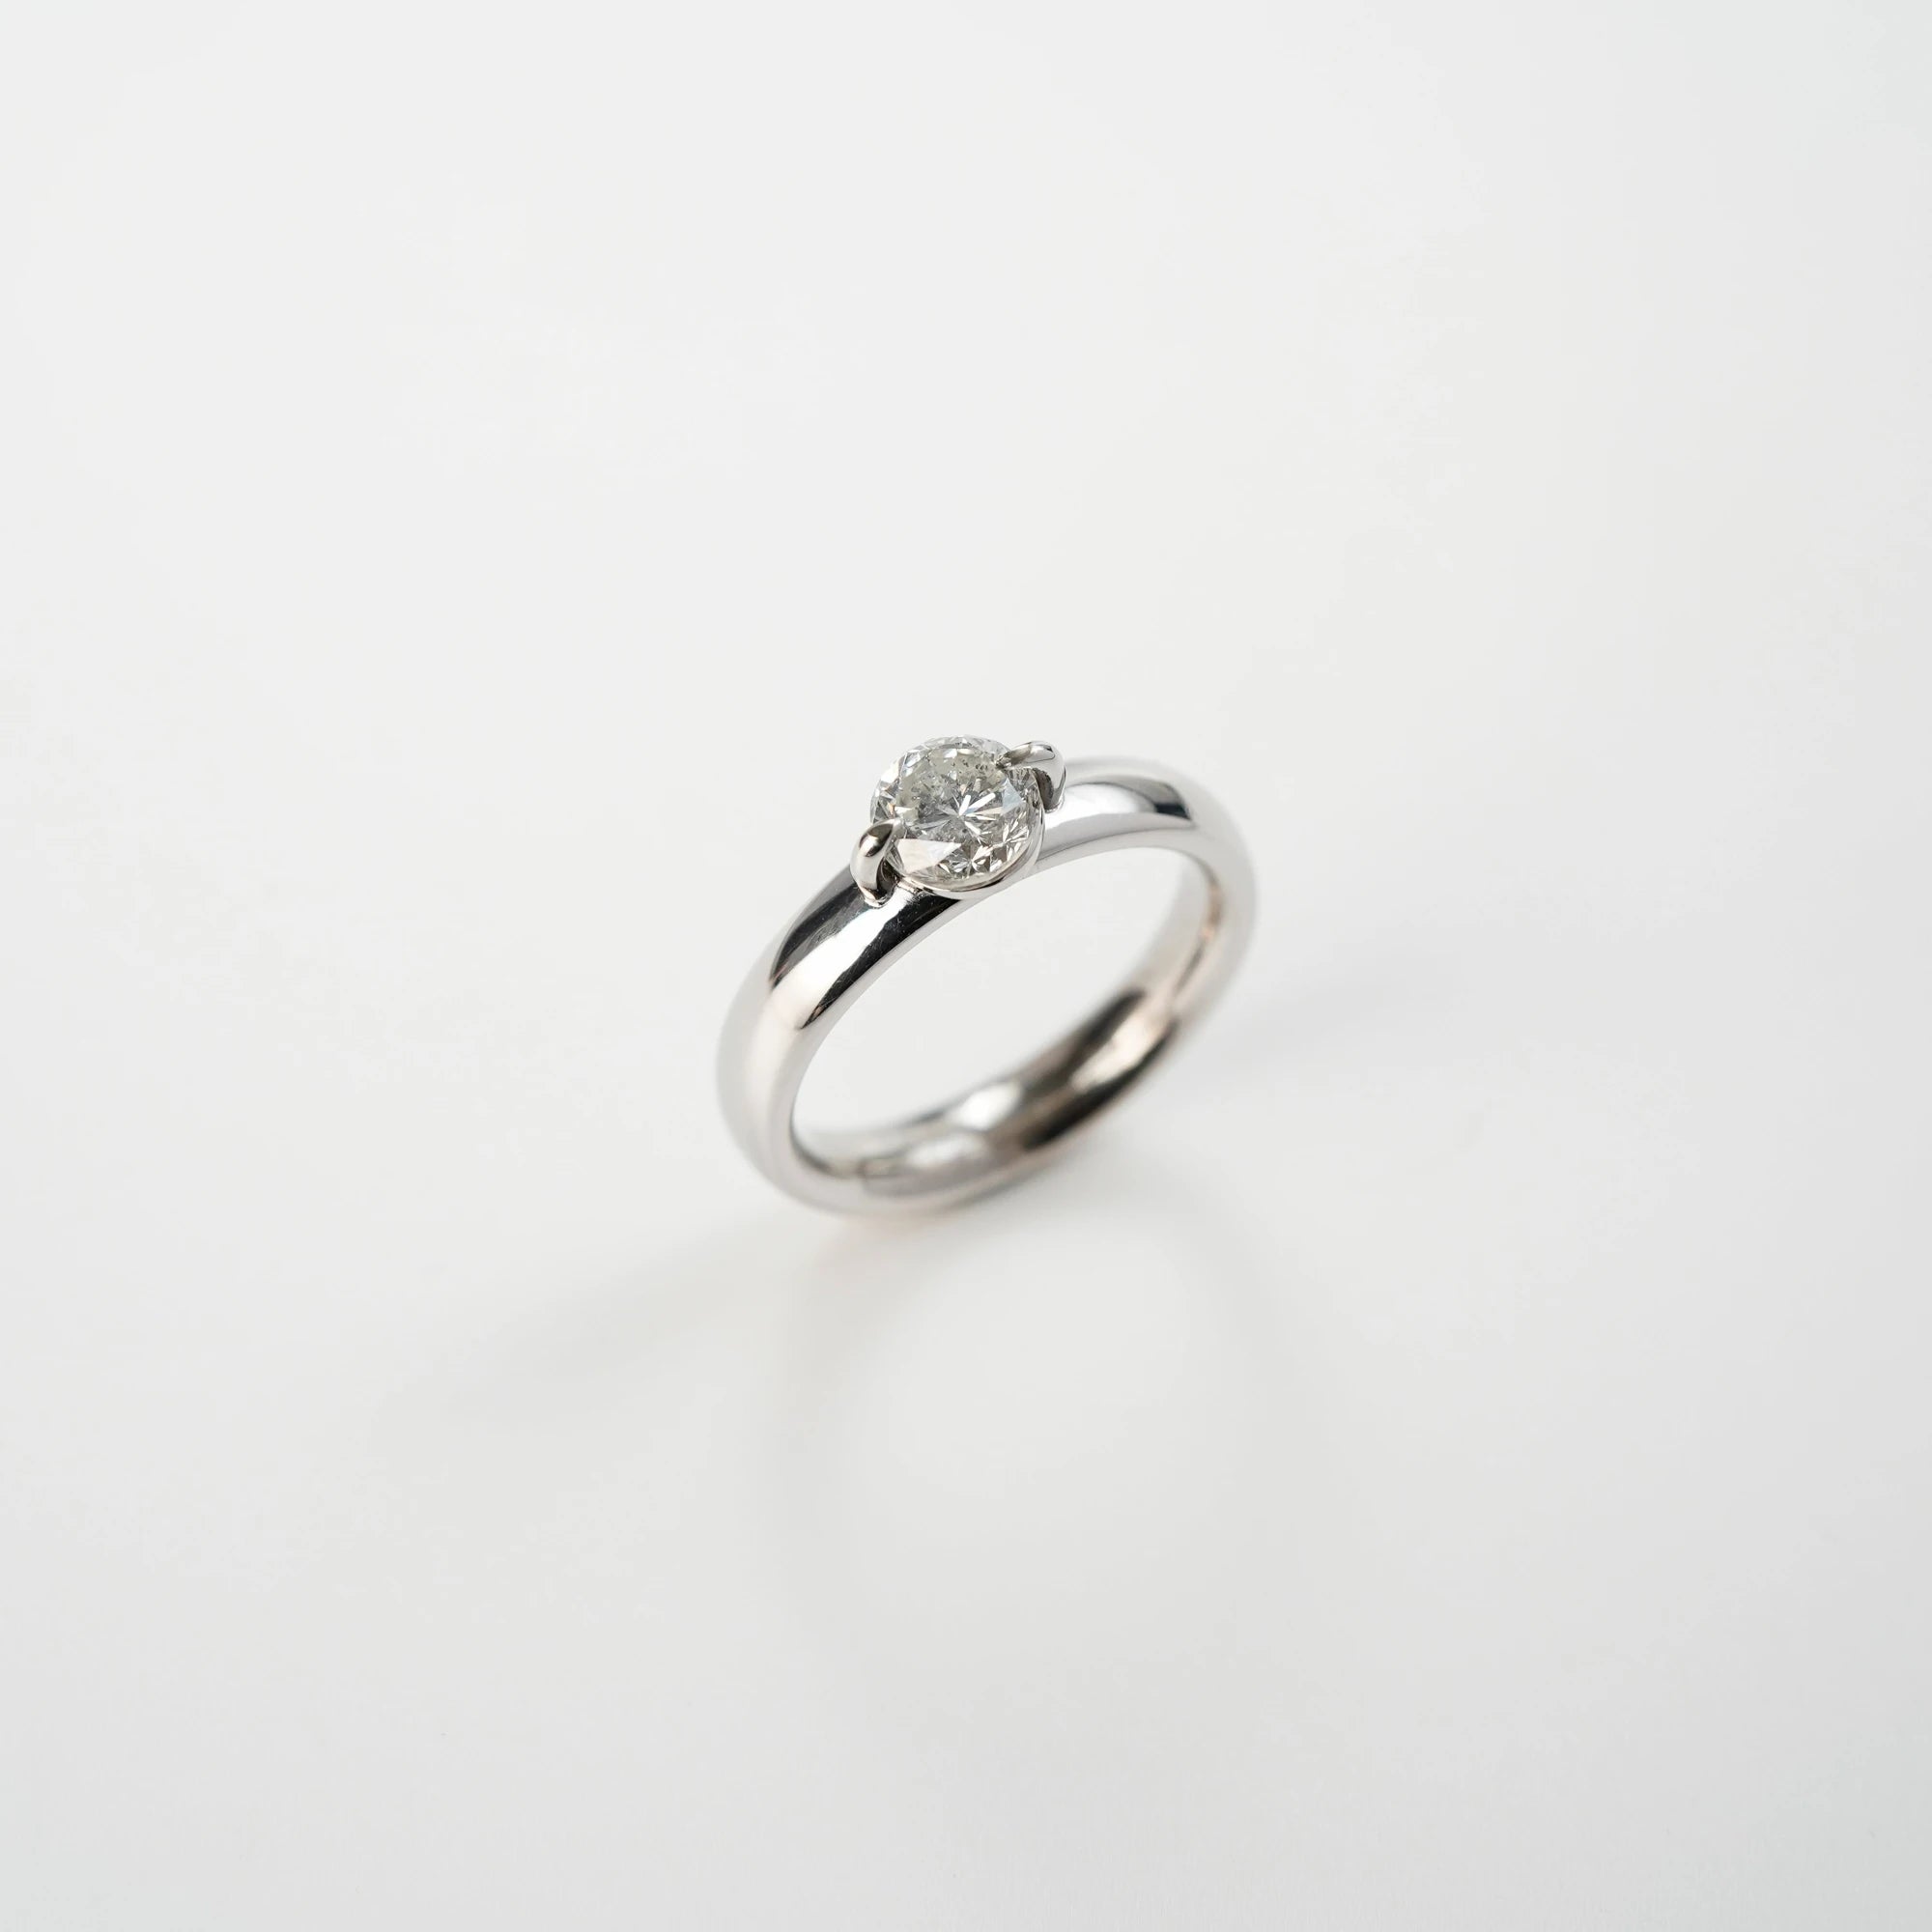 Produktfotografie des Weißgold-Solitaire-Rings mit einem 1,10 Carat Diamanten aus der Schmuckatelier Lang Collection mit leicht seitlichem Blickwinkel 